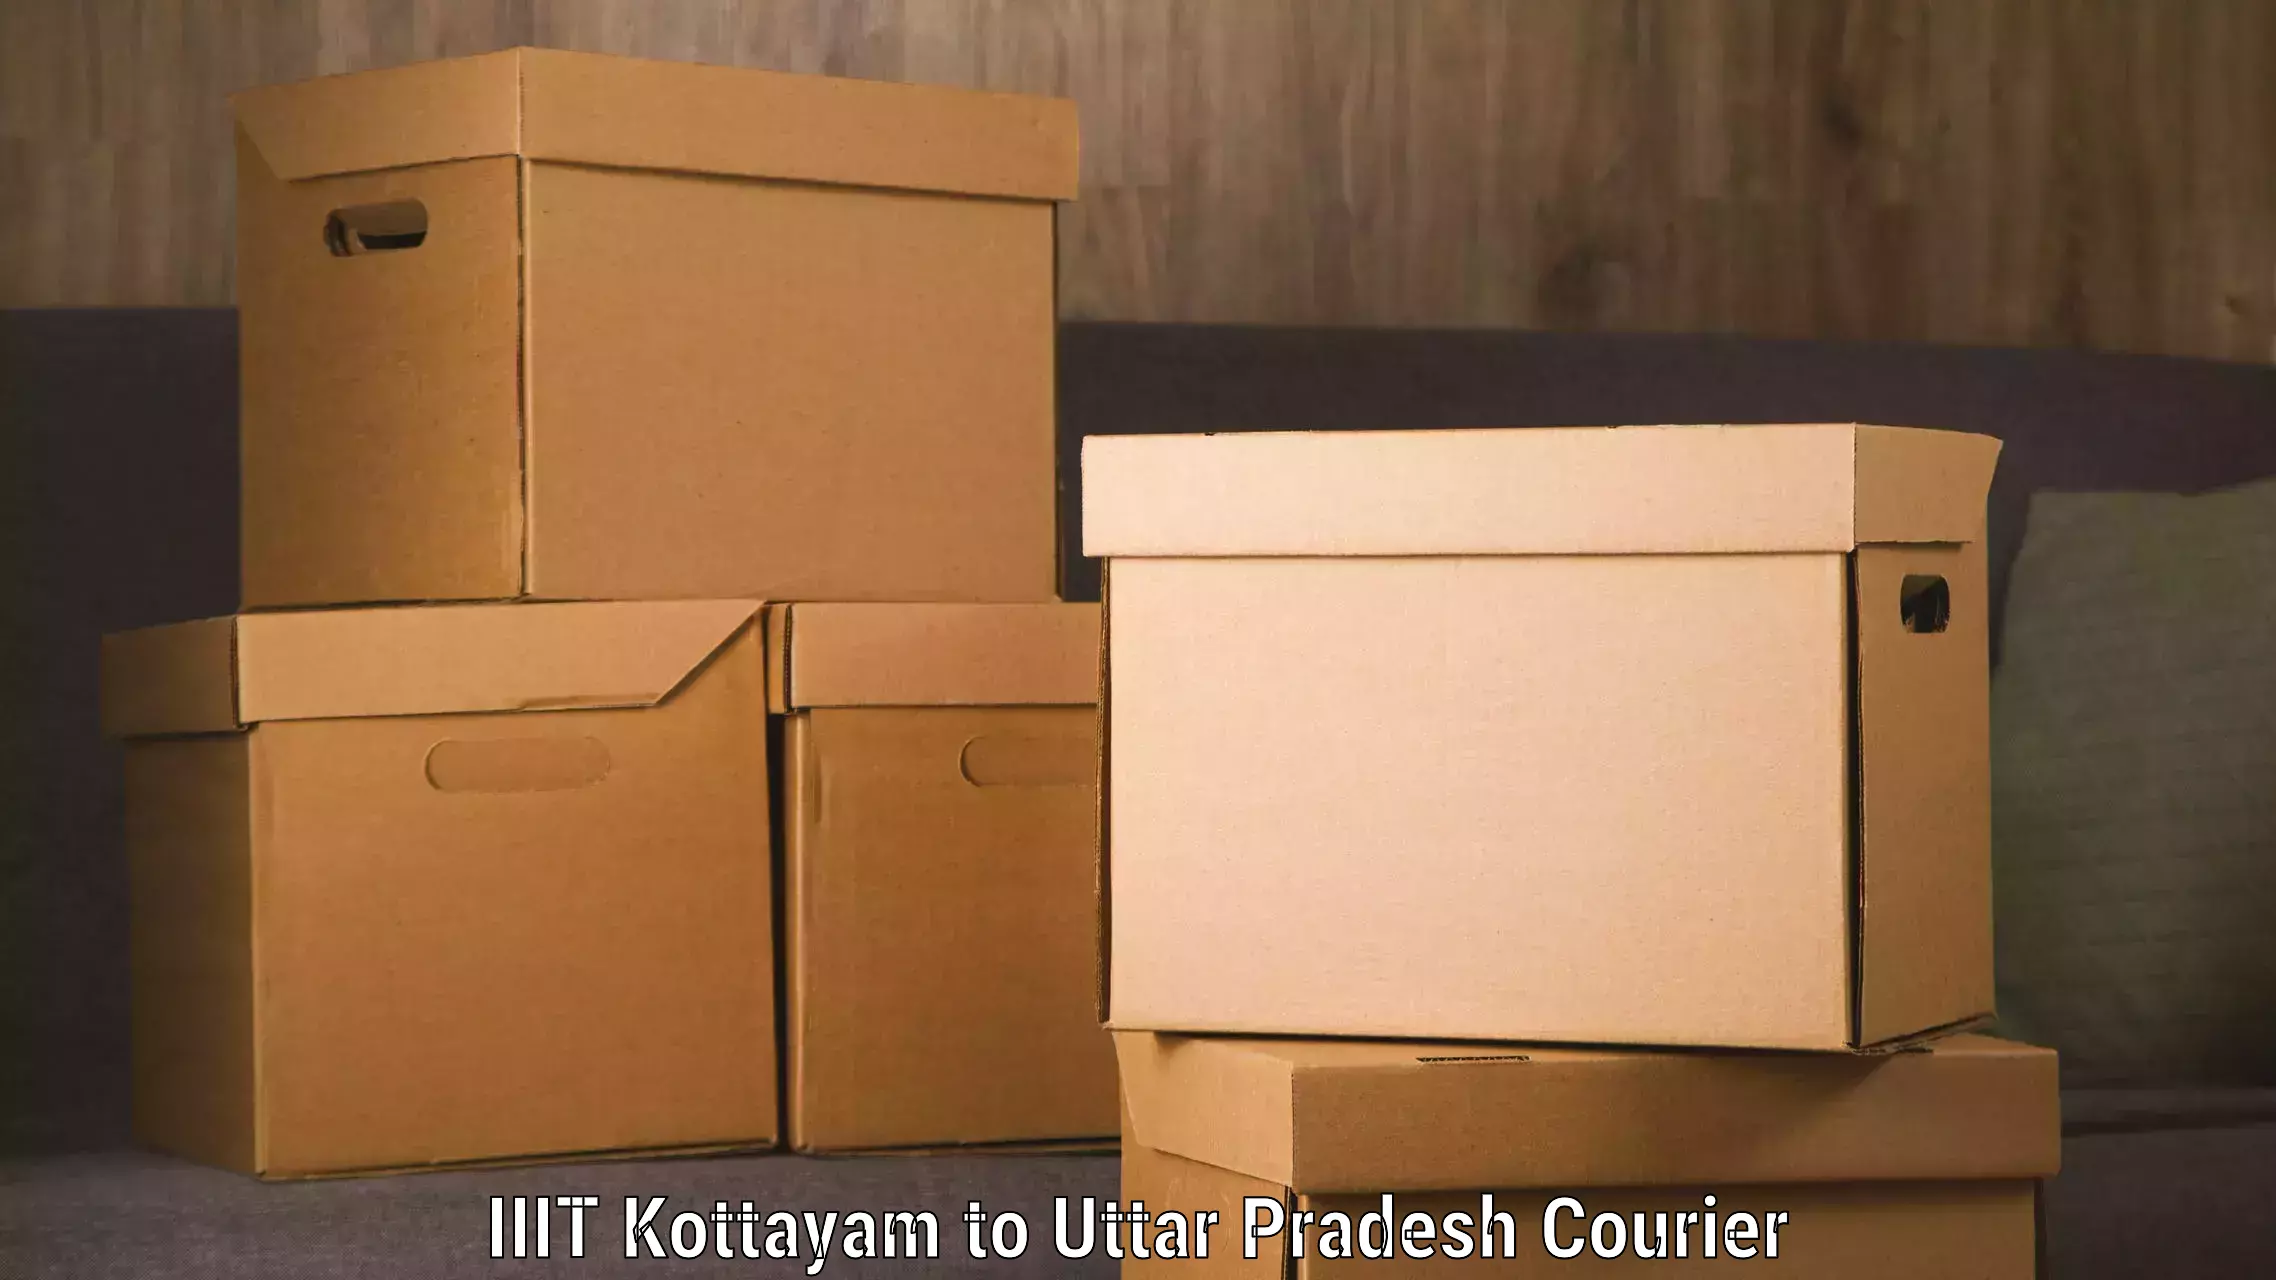 Express logistics IIIT Kottayam to Modinagar